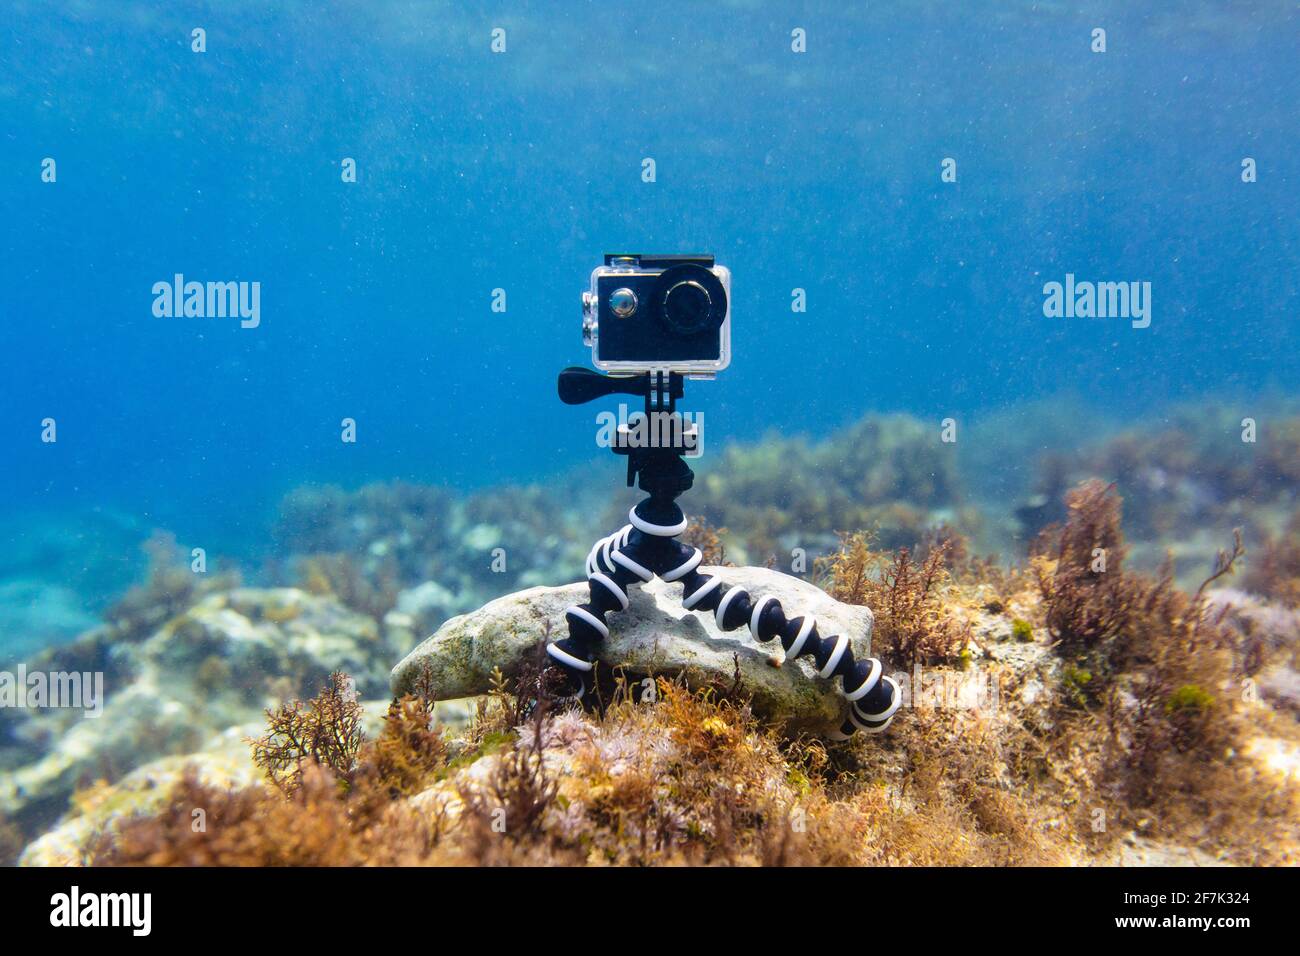 Mit Action-Kamera in wasserdichter Box auf einem flexiblen faltbaren Mini  Stativ, um Fotos und Videos unter Wasser von unten zu machen Des Meeres  Stockfotografie - Alamy